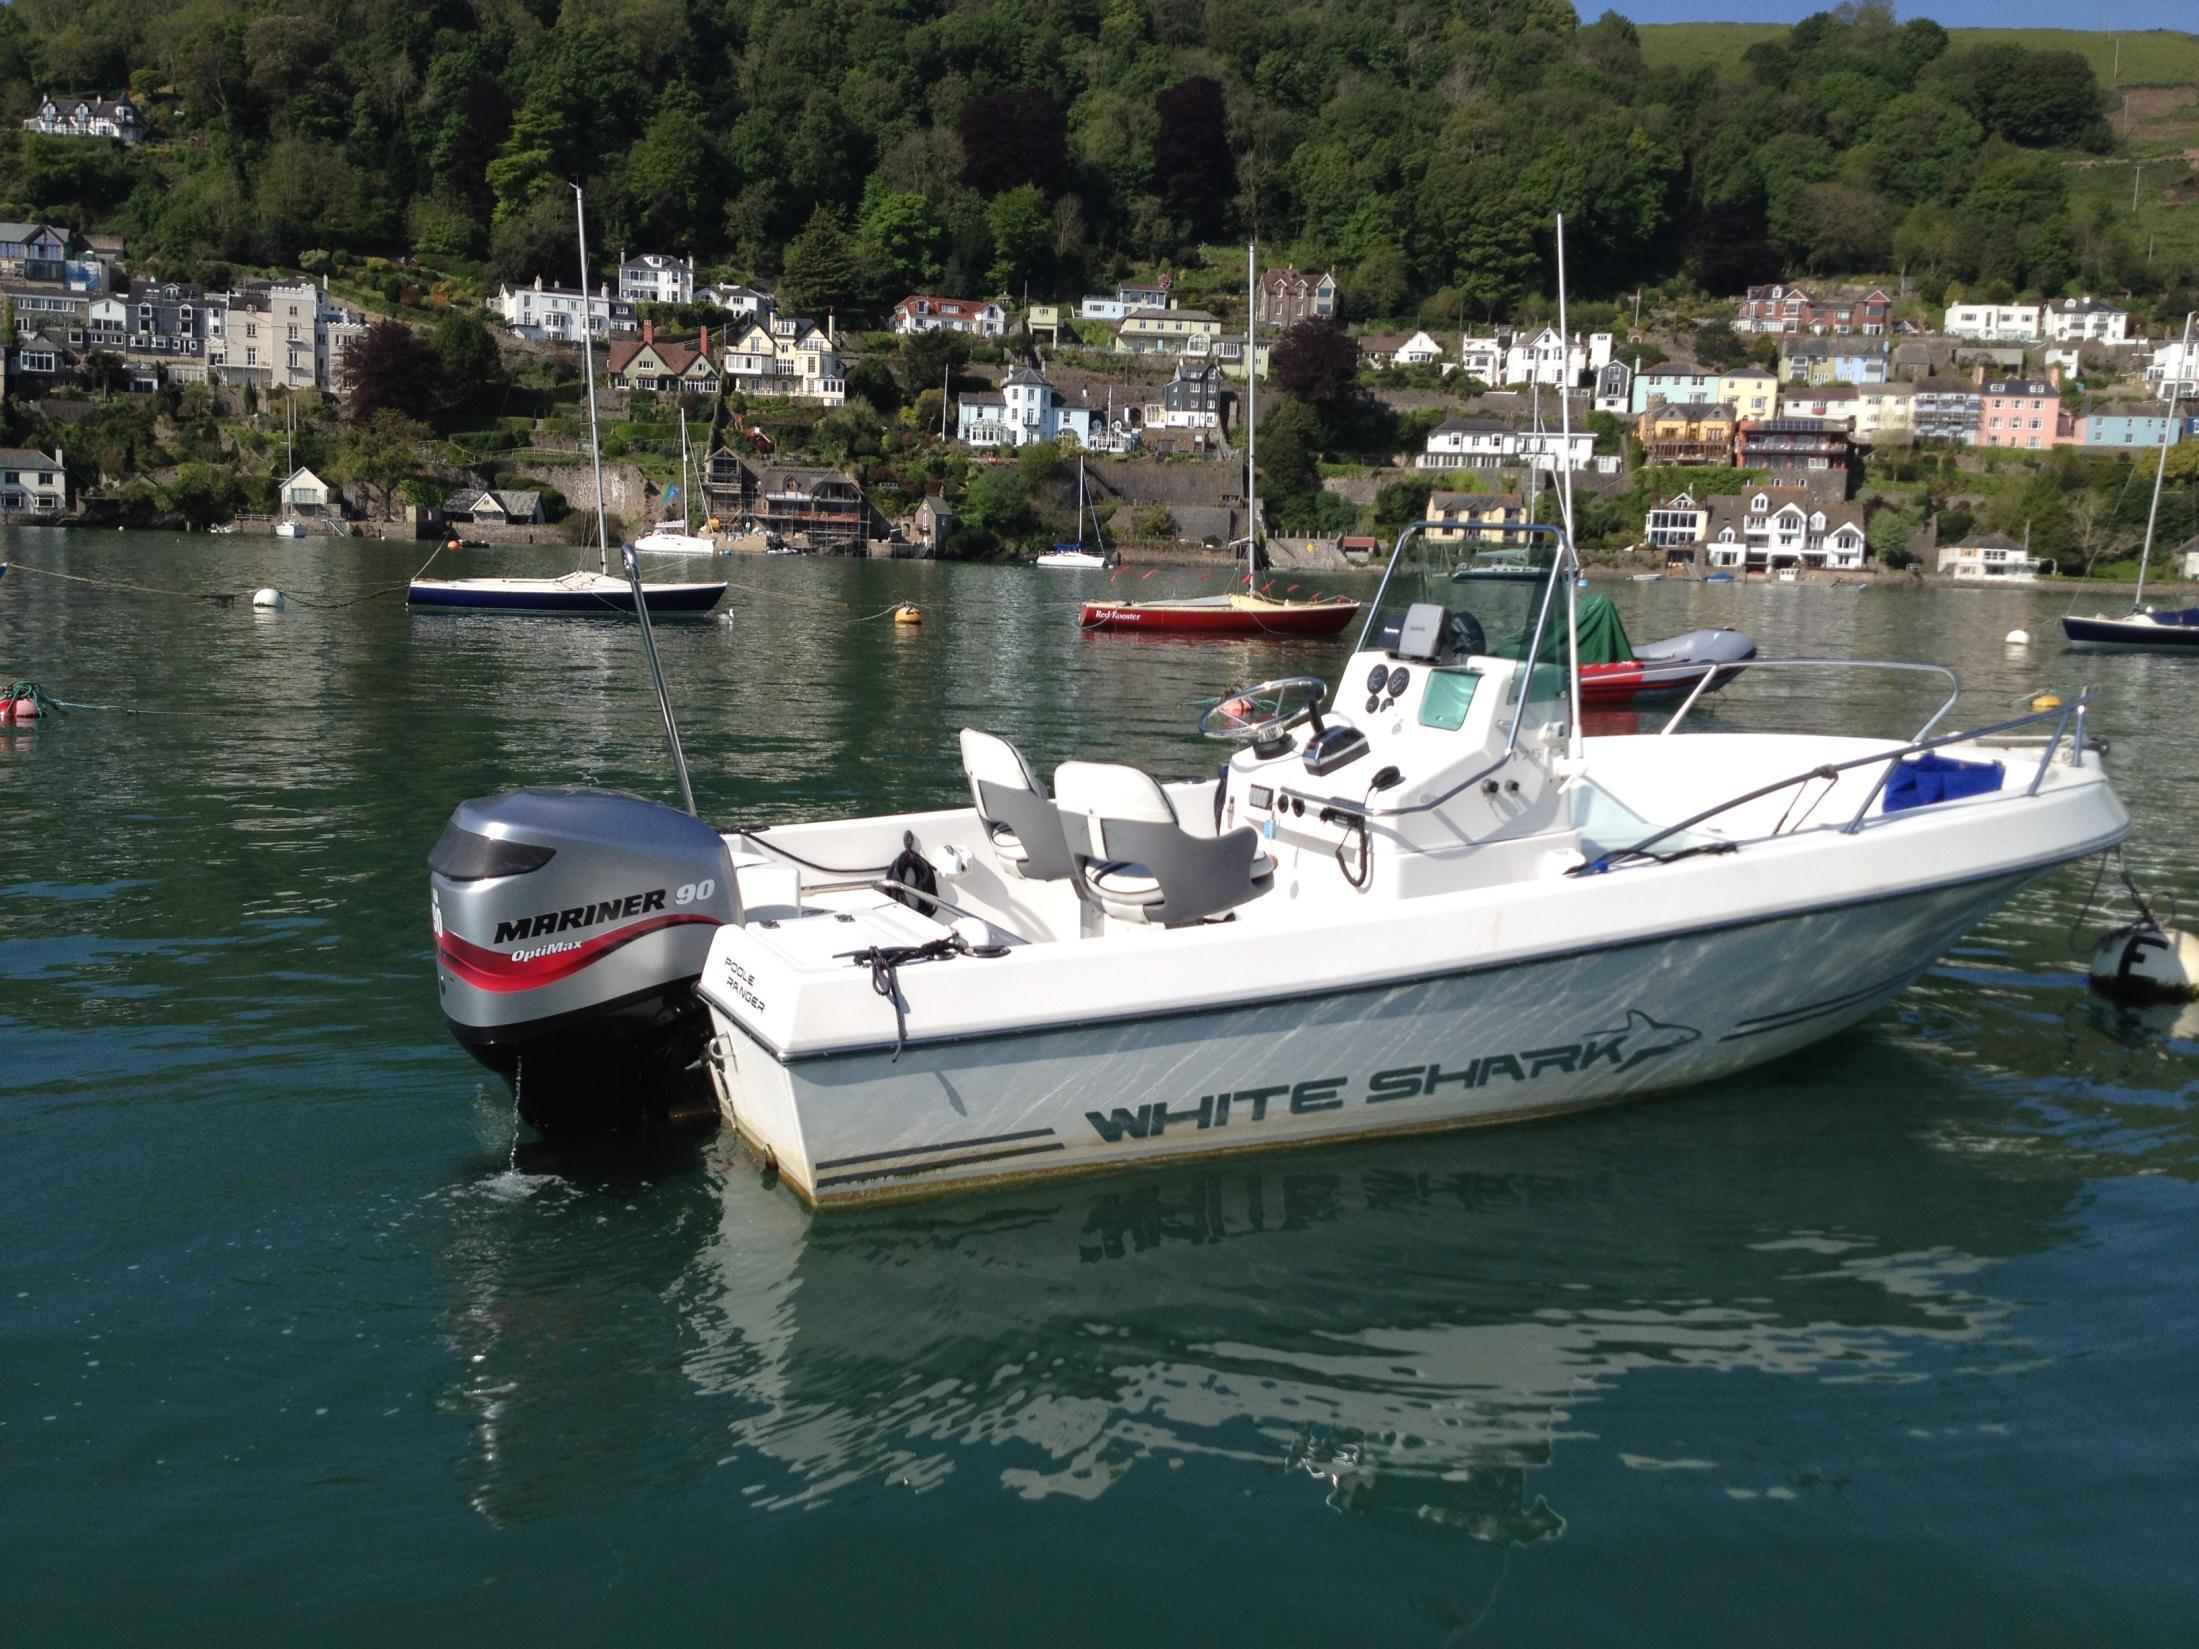 White Shark 175, Dartmouth, Devon